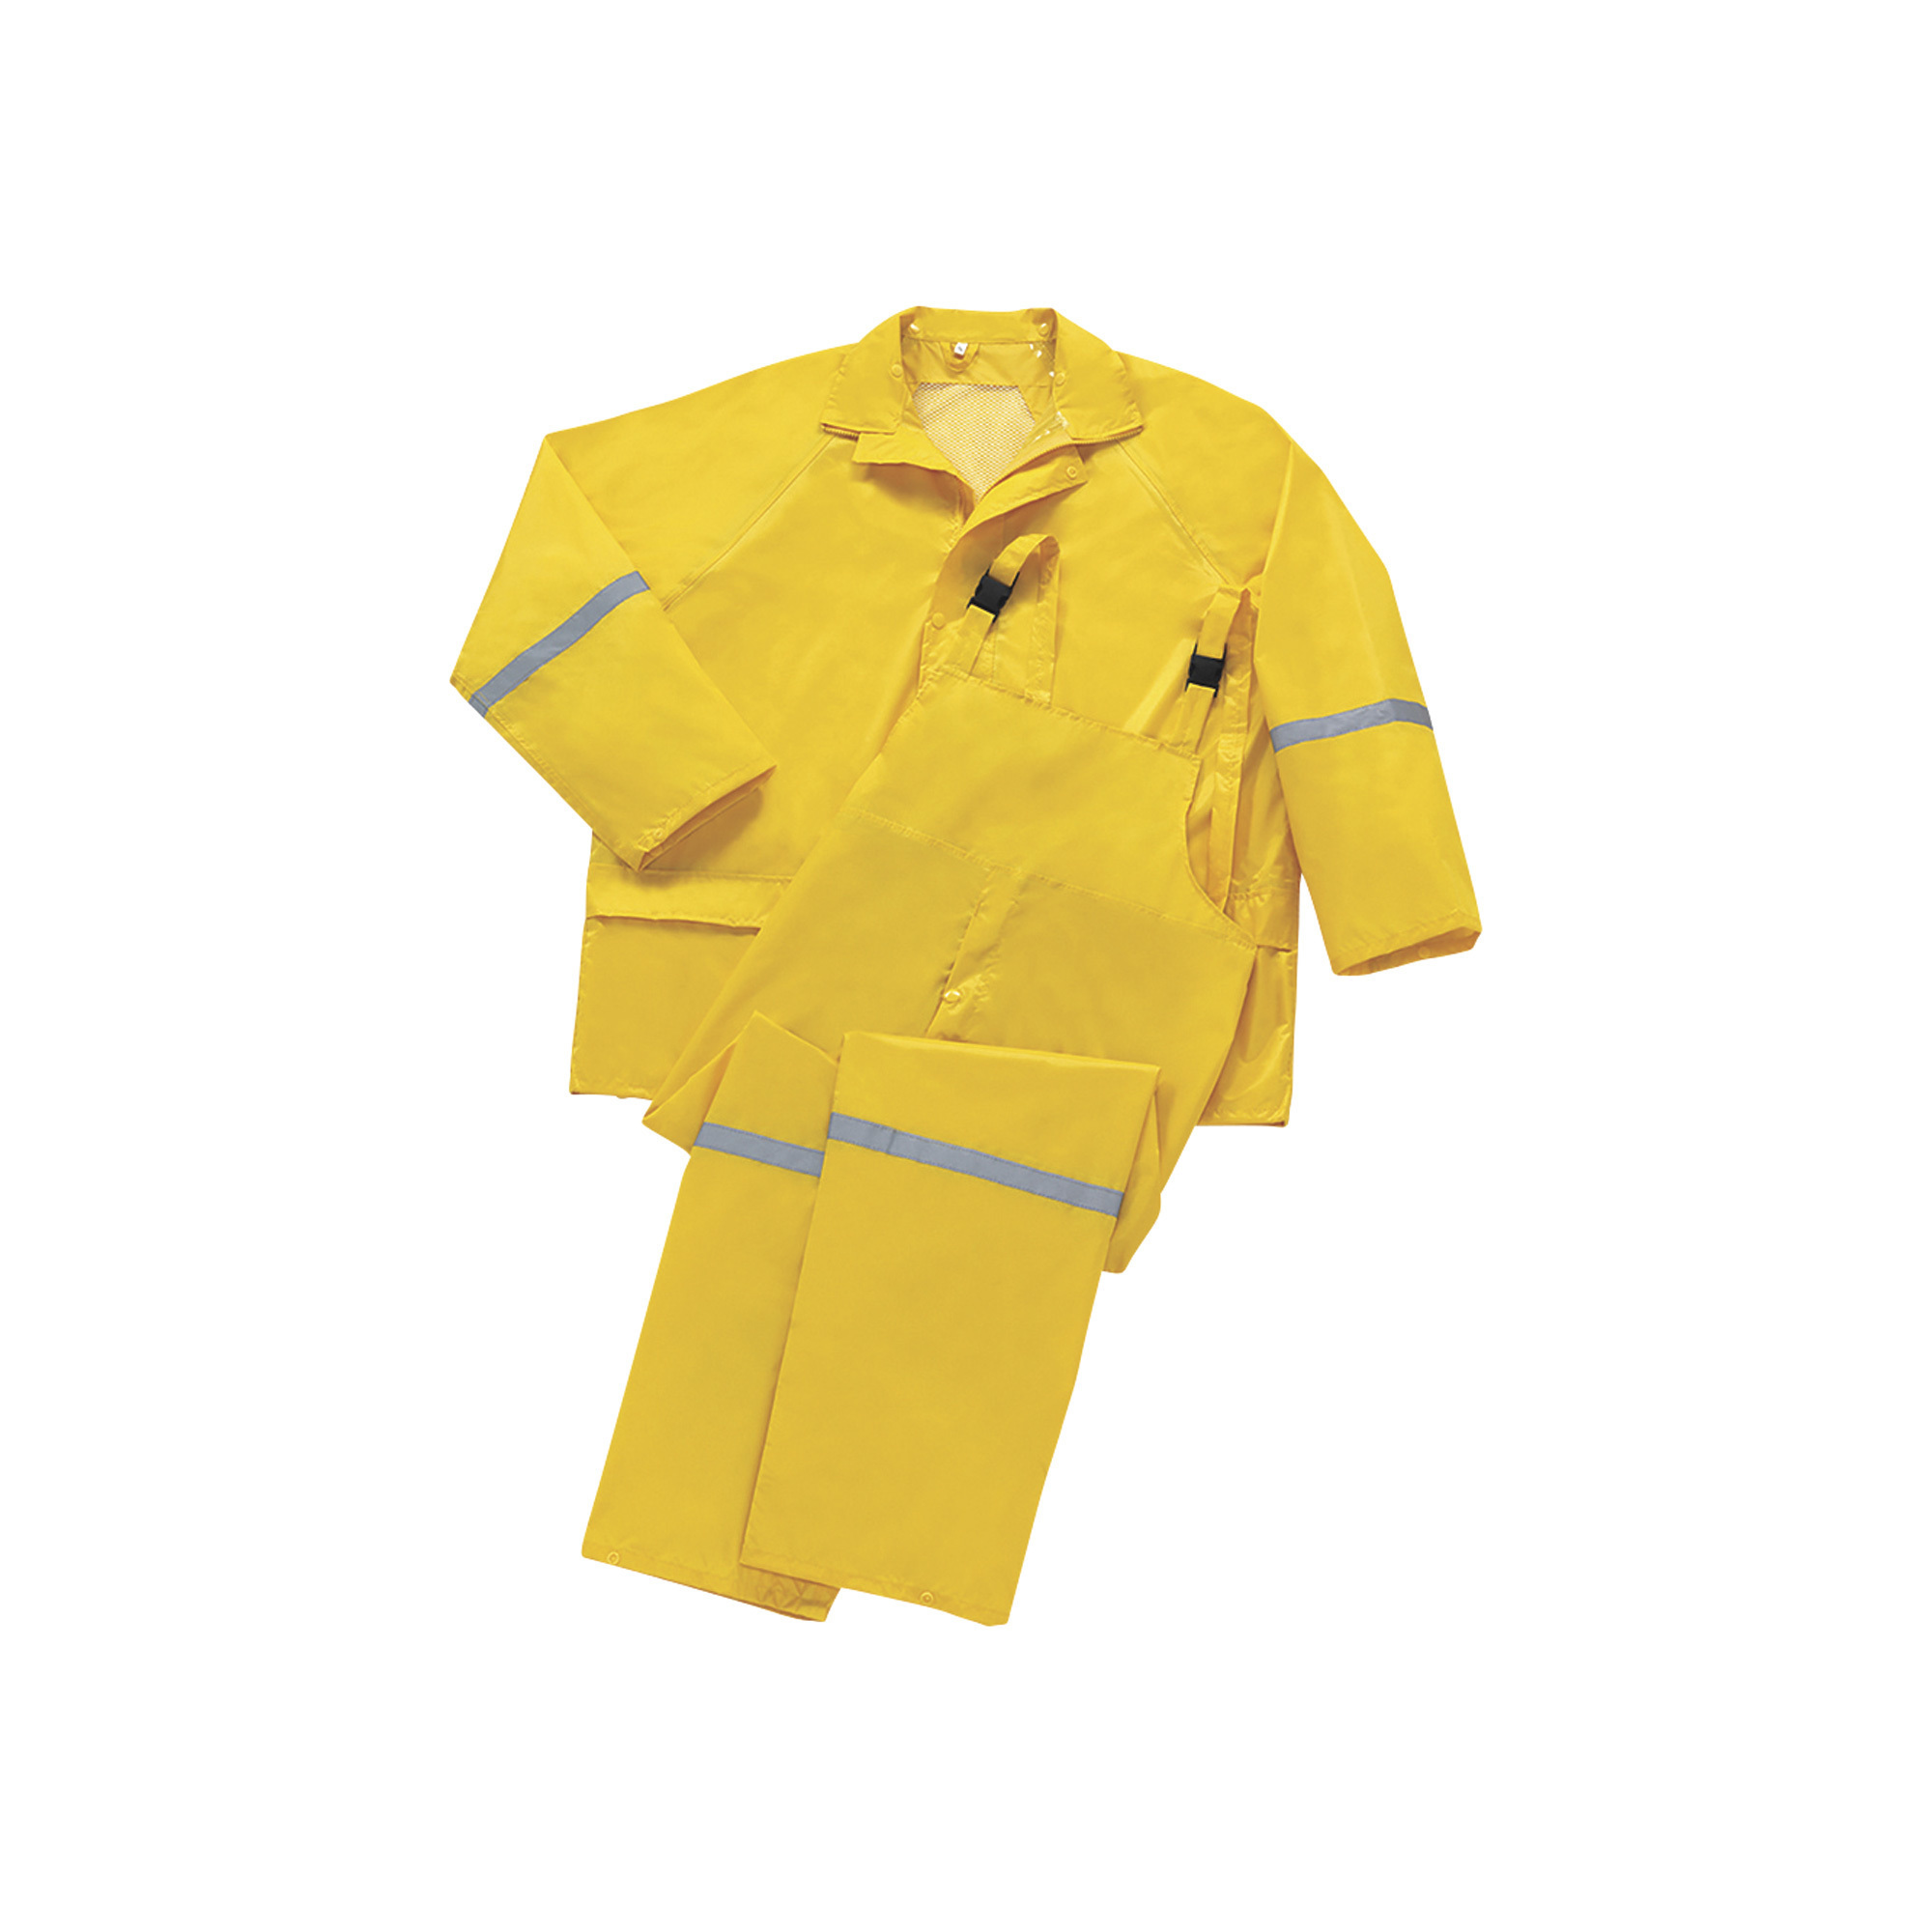 West Chester Men's Protective Gear 3-Piece Rain Suit - Yellow, XL, Model 44336/L